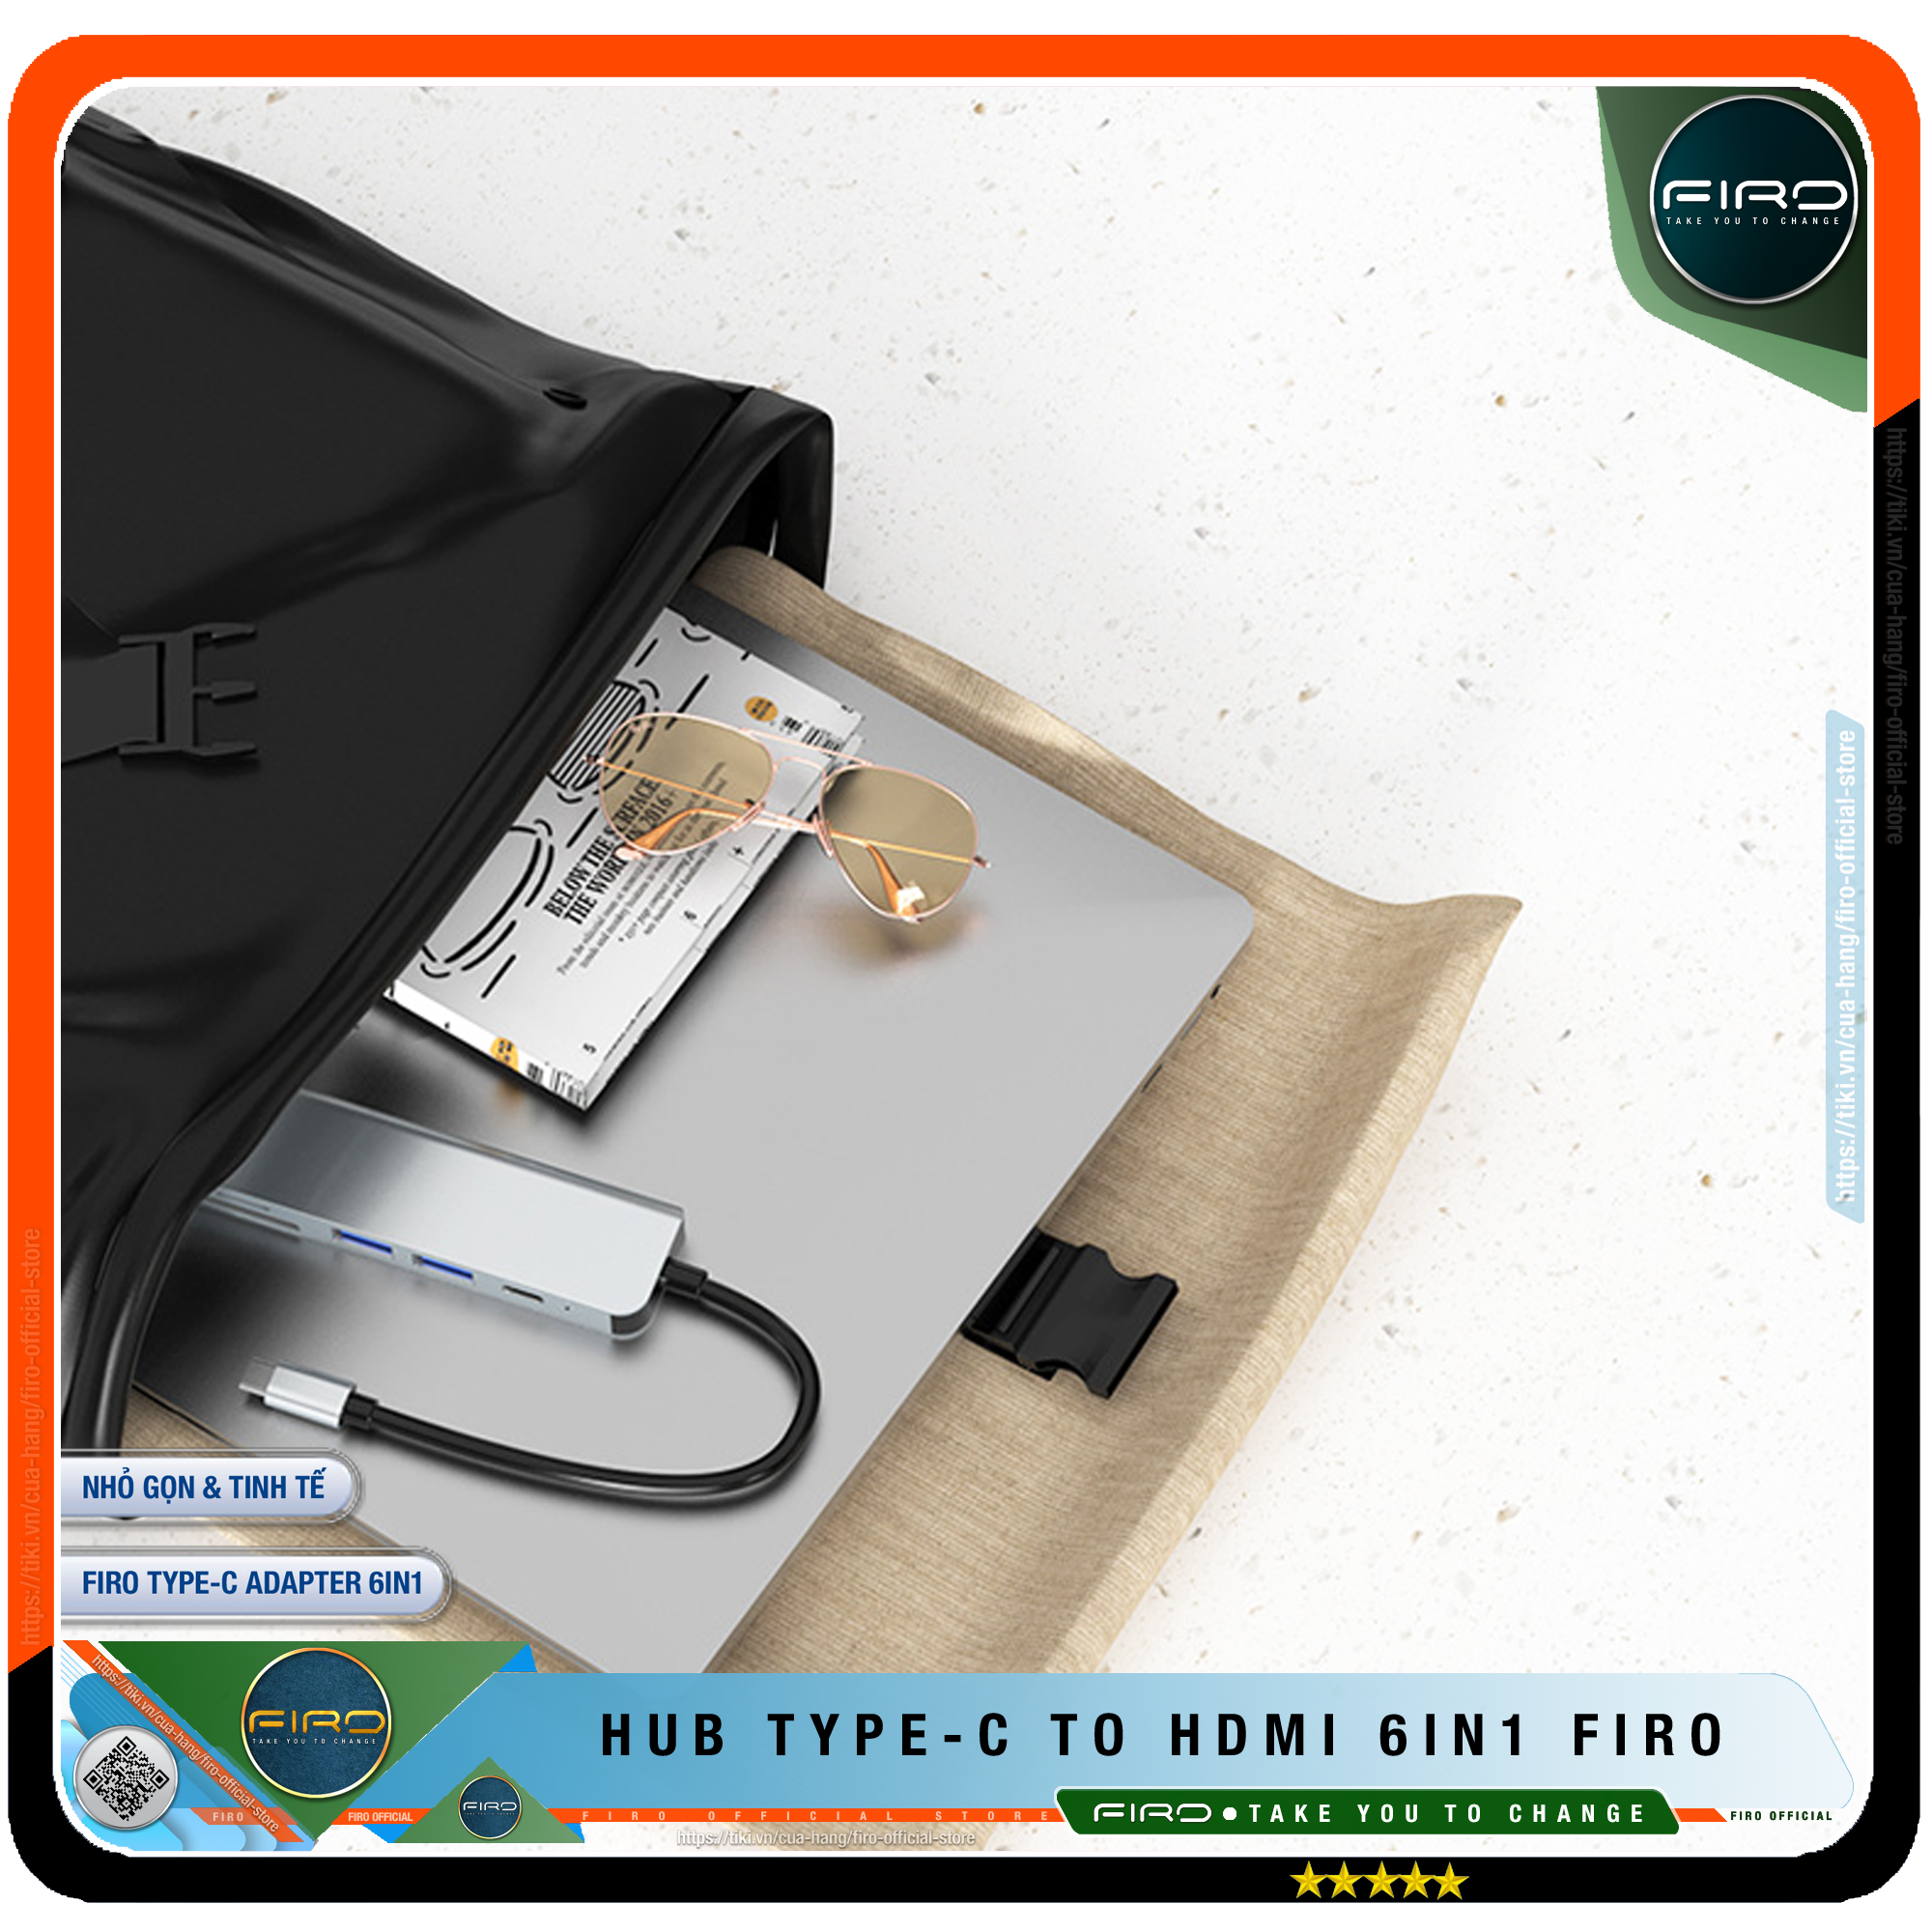 Hub Type-C To HDMI FIRO 6in1 Chuẩn HDTV - Hub Chuyển Đổi Type-C Chia 6 Cổng - 1 Cổng HDMI/HDTV 4K, 2 Cổng USB 3.0, 2 Khe Đọc Thẻ TF Và SD, 1 Cổng Sạc Nhanh Type C PD - Kết Nối Tốc Độ Cao - Dùng Cho Smartphone/Laptop/PC/Tivi/Playstation – Hàng Chính Hãng